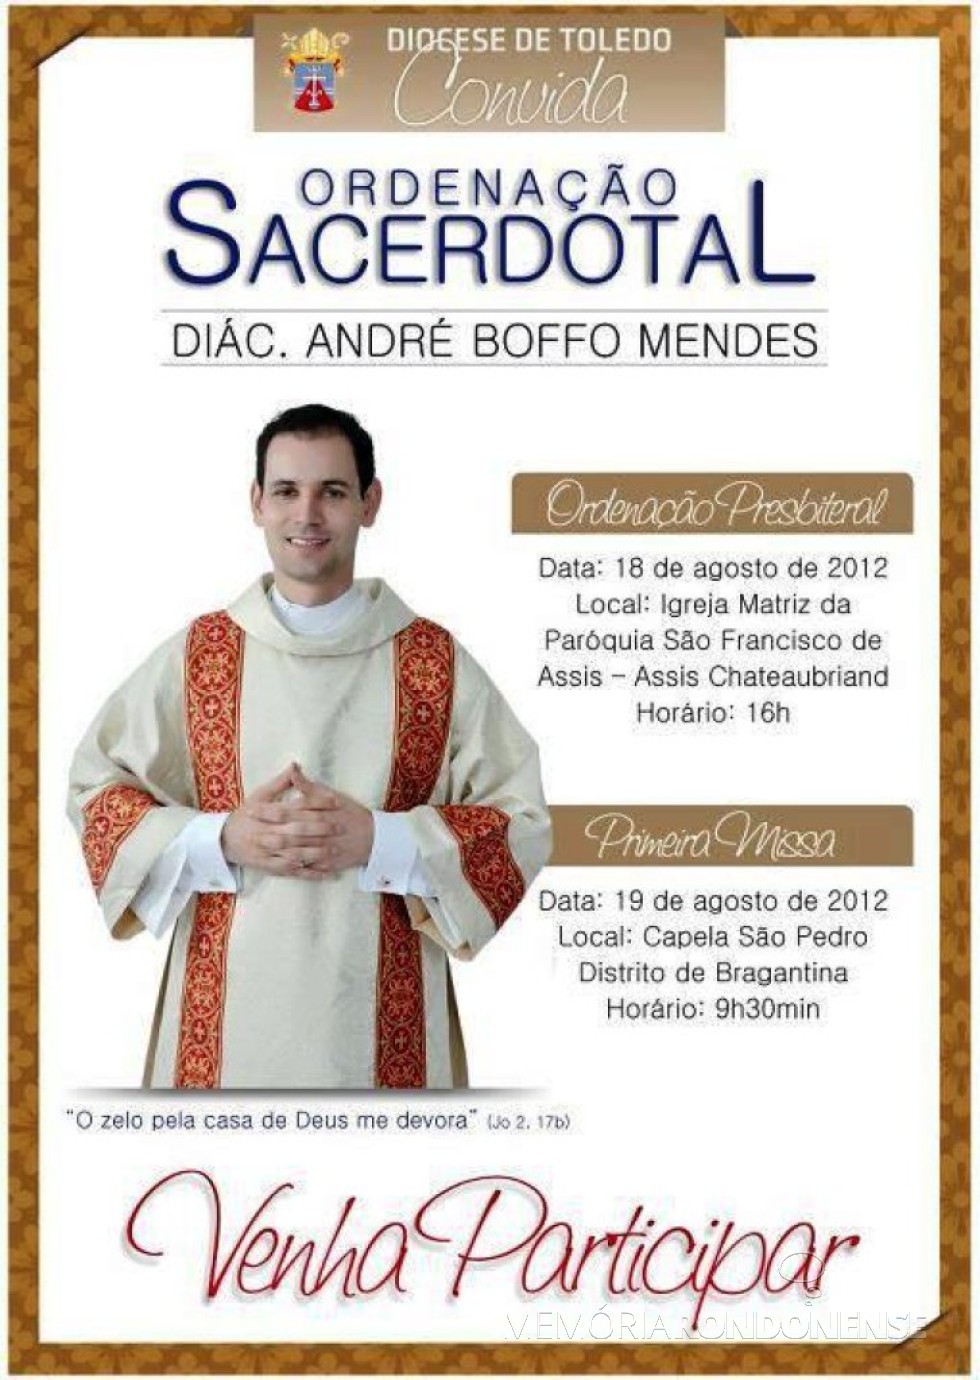 || Convite da diocese de Toledo para a ordenação sacerdotal de André Boffo Mendes.
Imagem: Acervo Blog Catequese - FOTO 13 - 